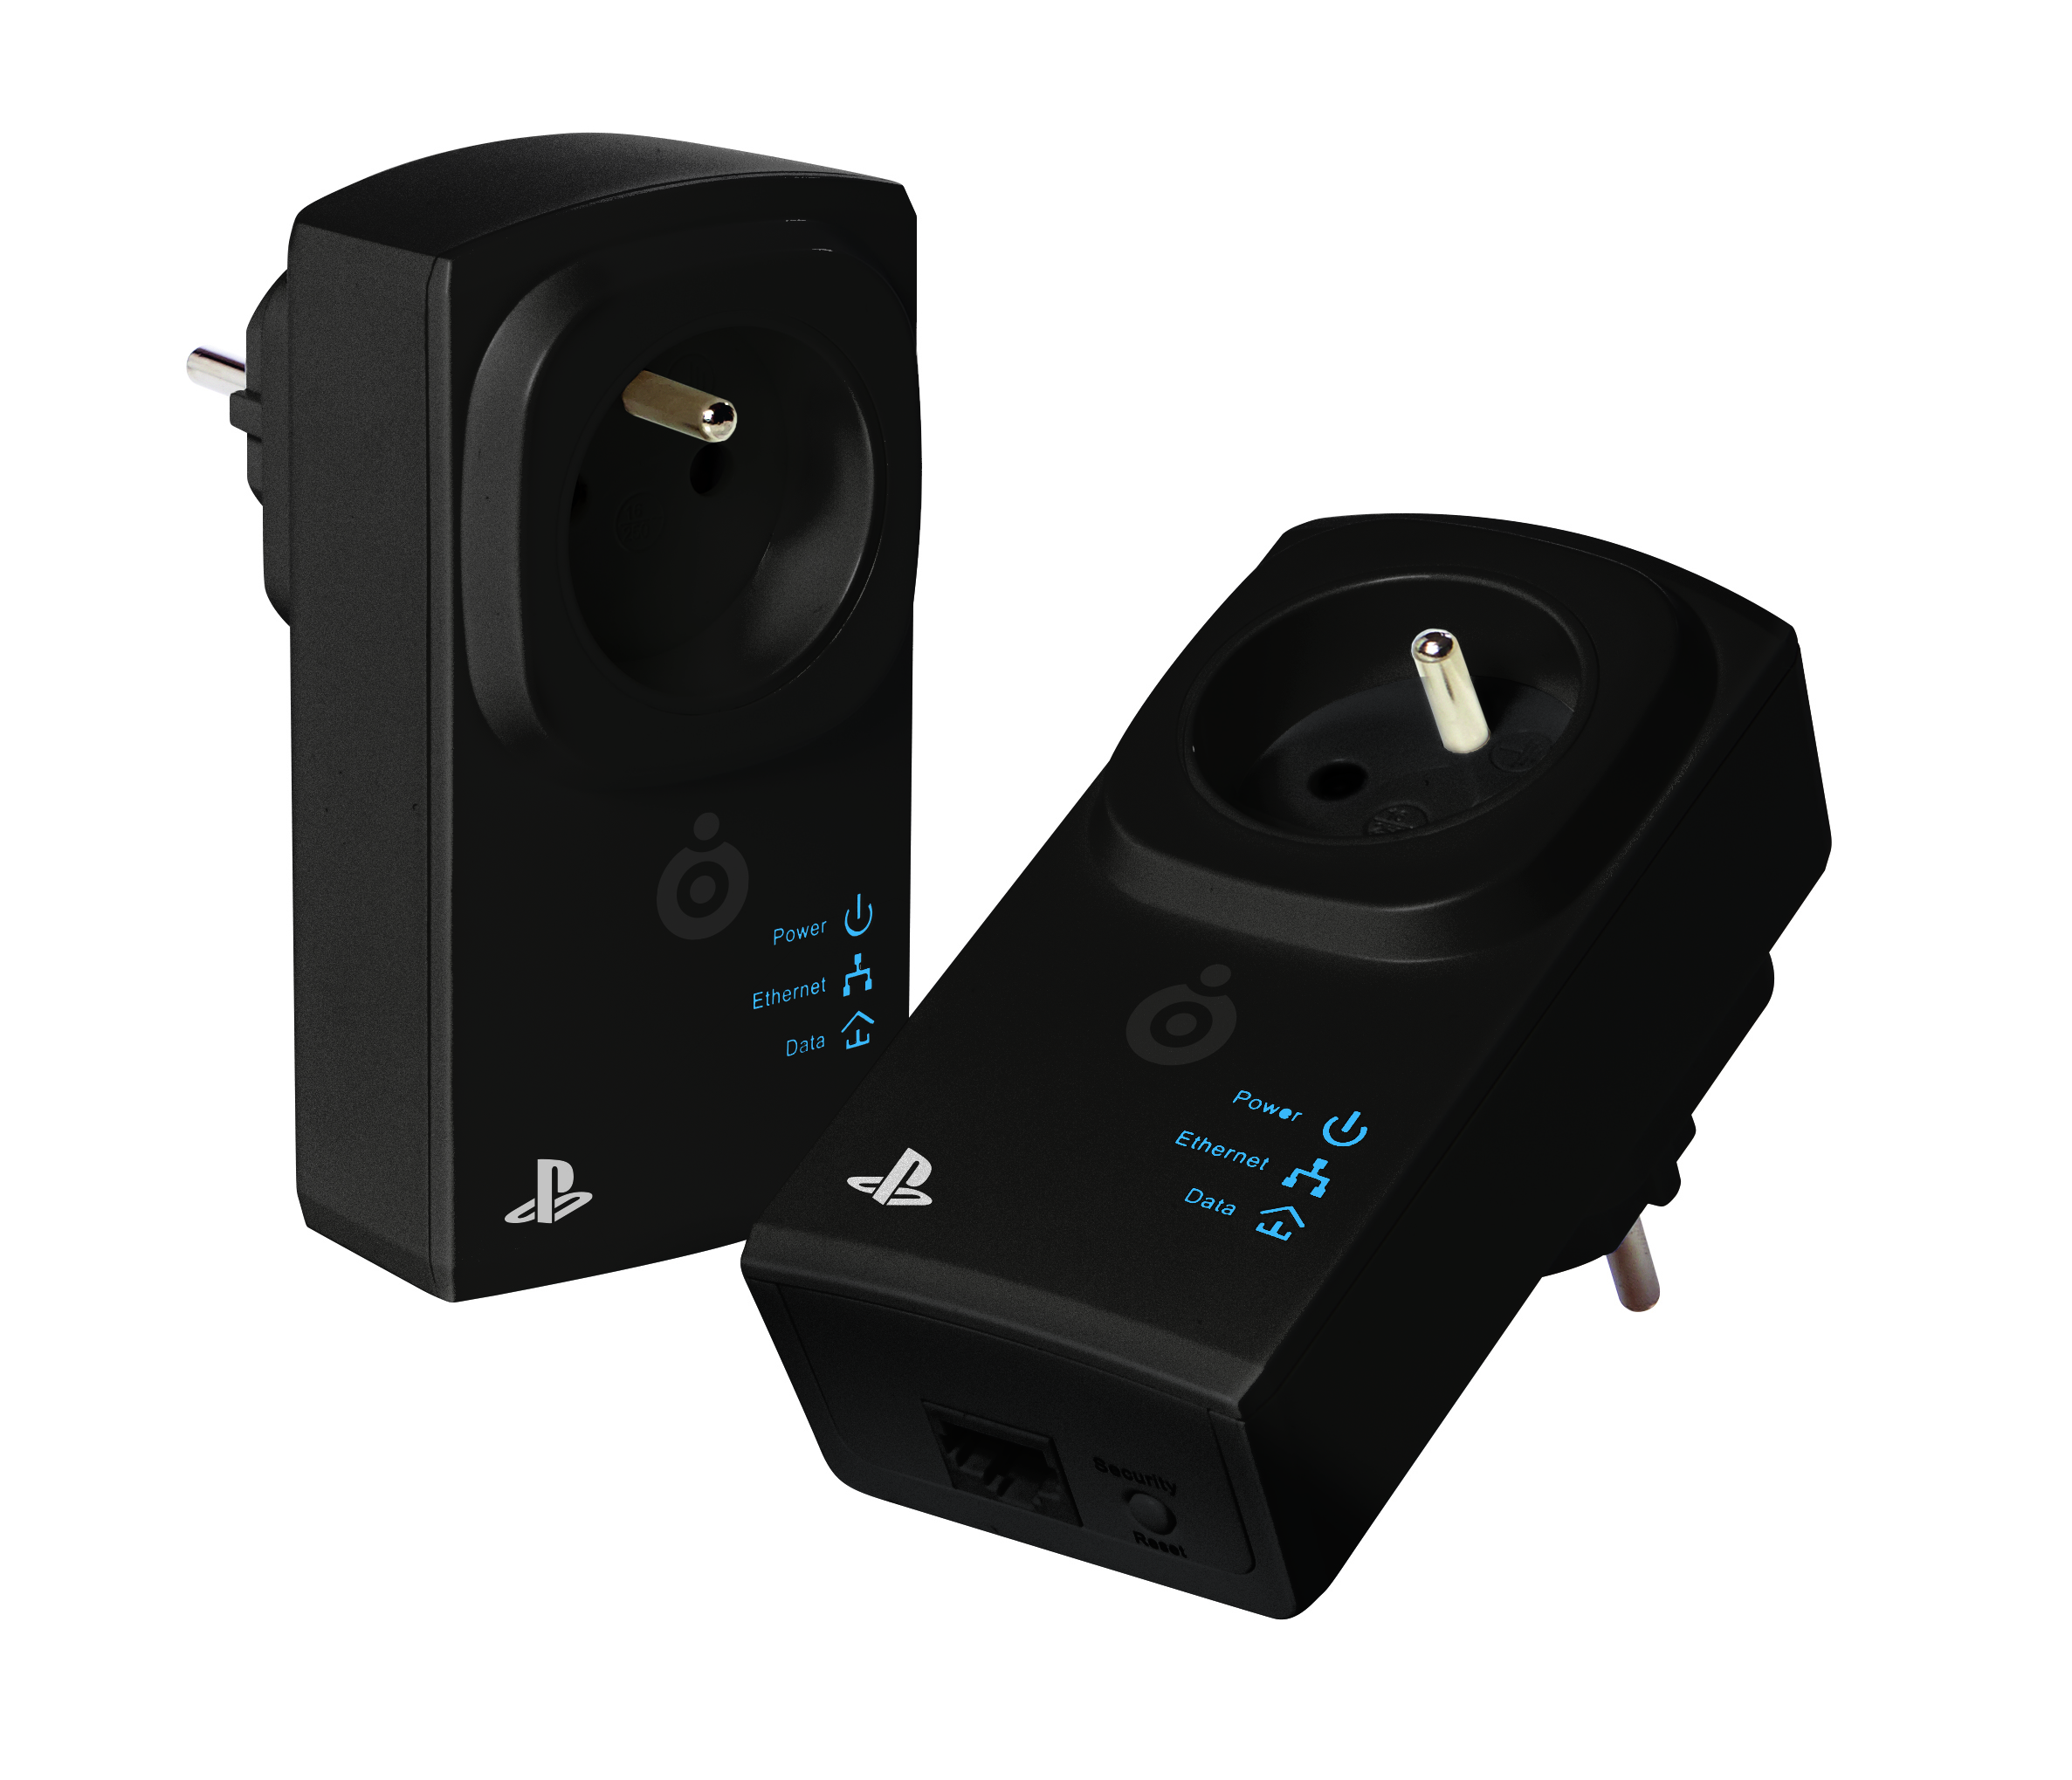 BigBen Officiële PLC adapter twin pack voor PS4/PS3